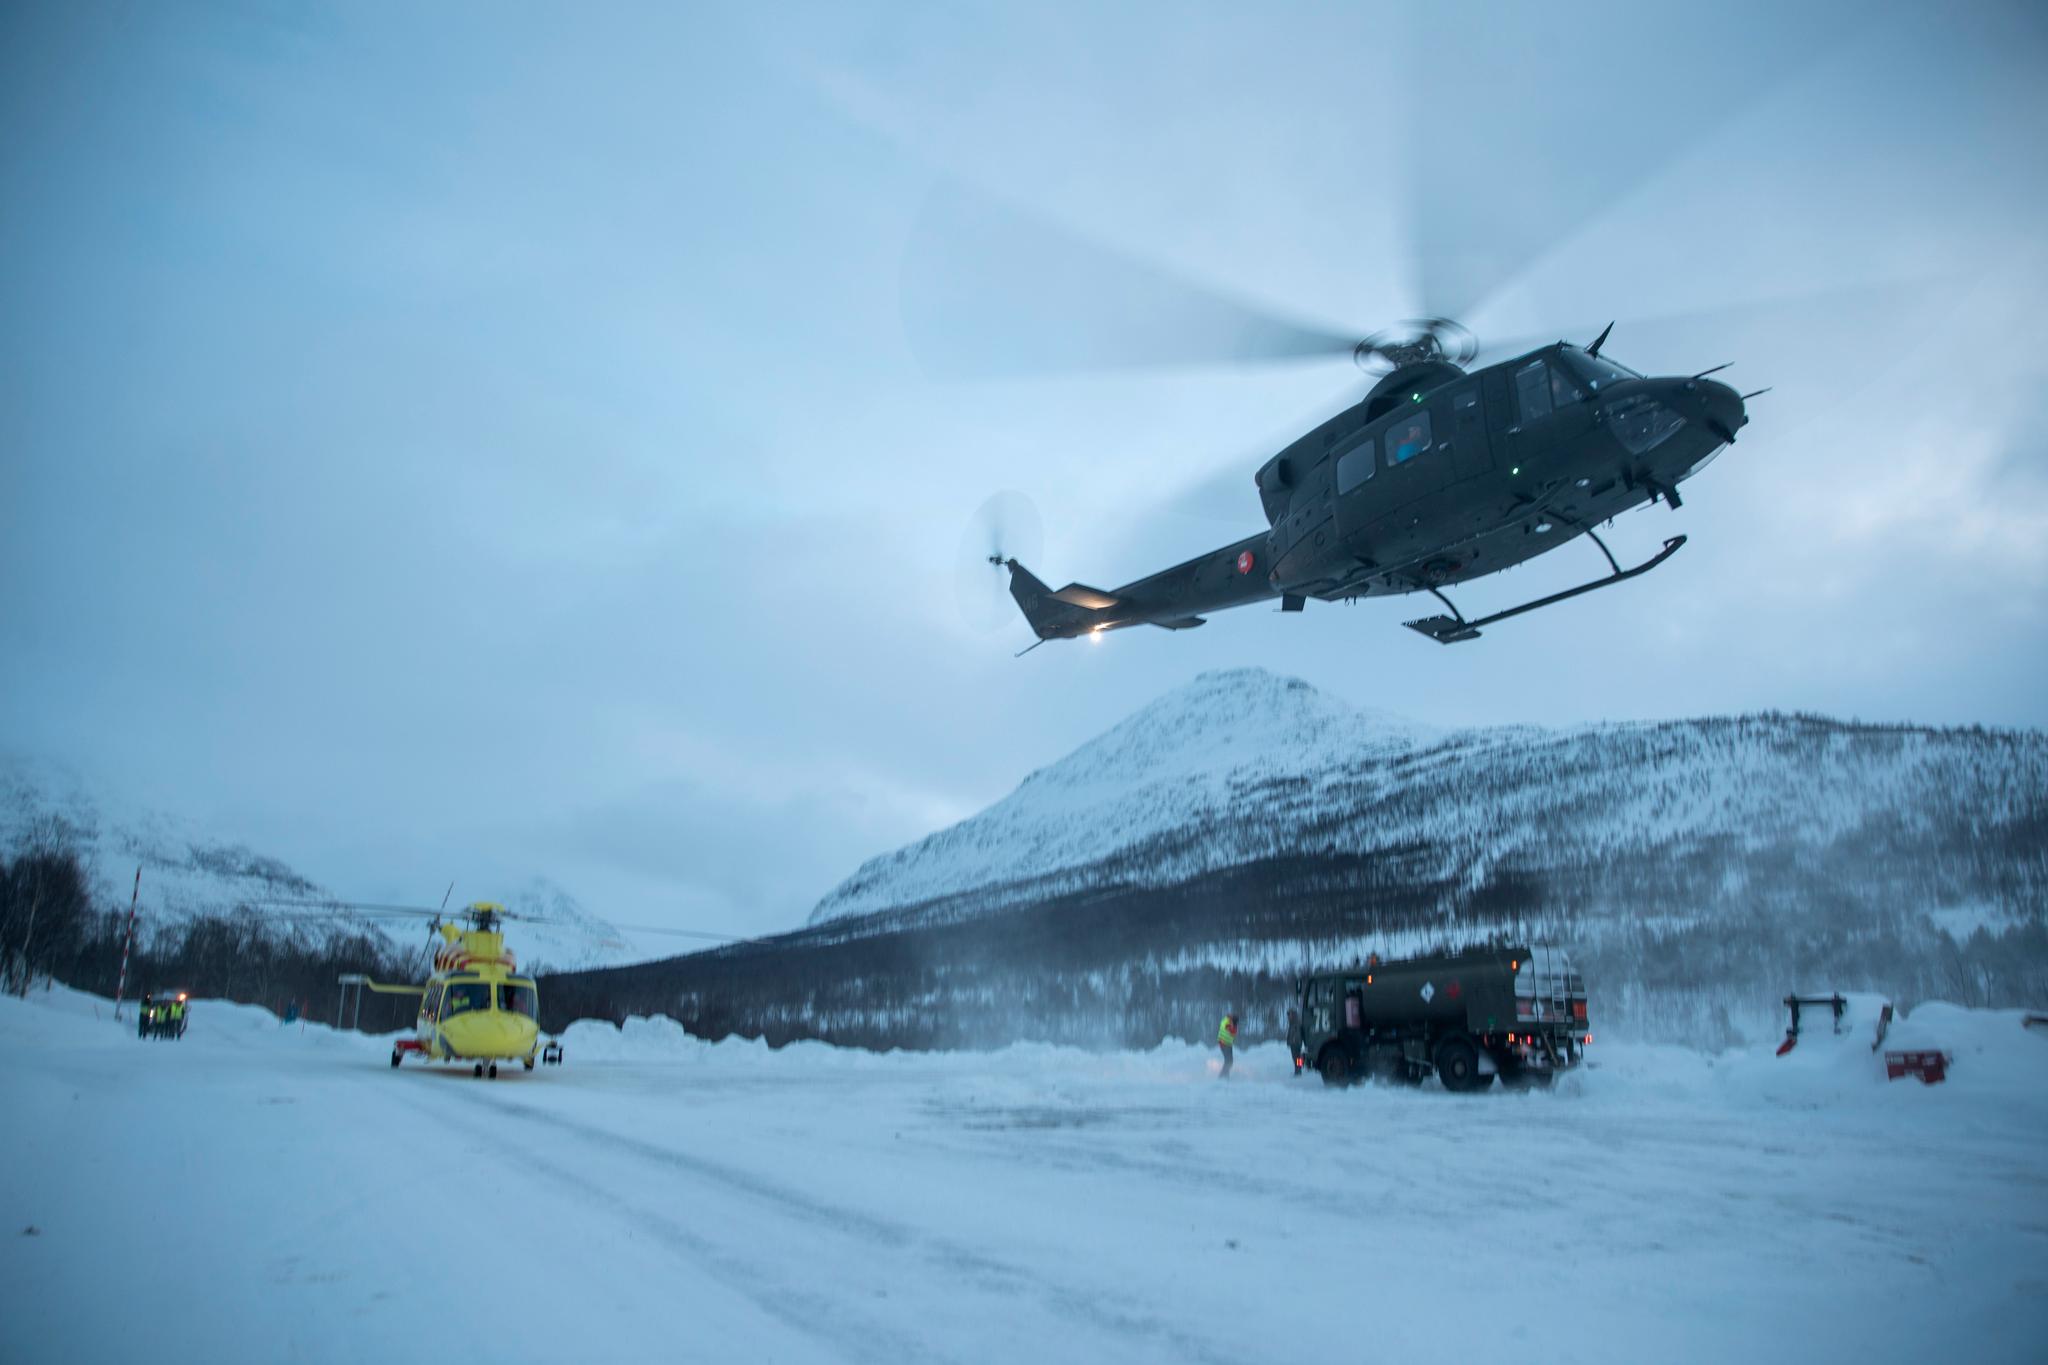  Helikoptre har blitt brukt i letearbeidet etter skiløperne, men mandag har været vært for dårlig. Dette bildet er tatt 4. januar.